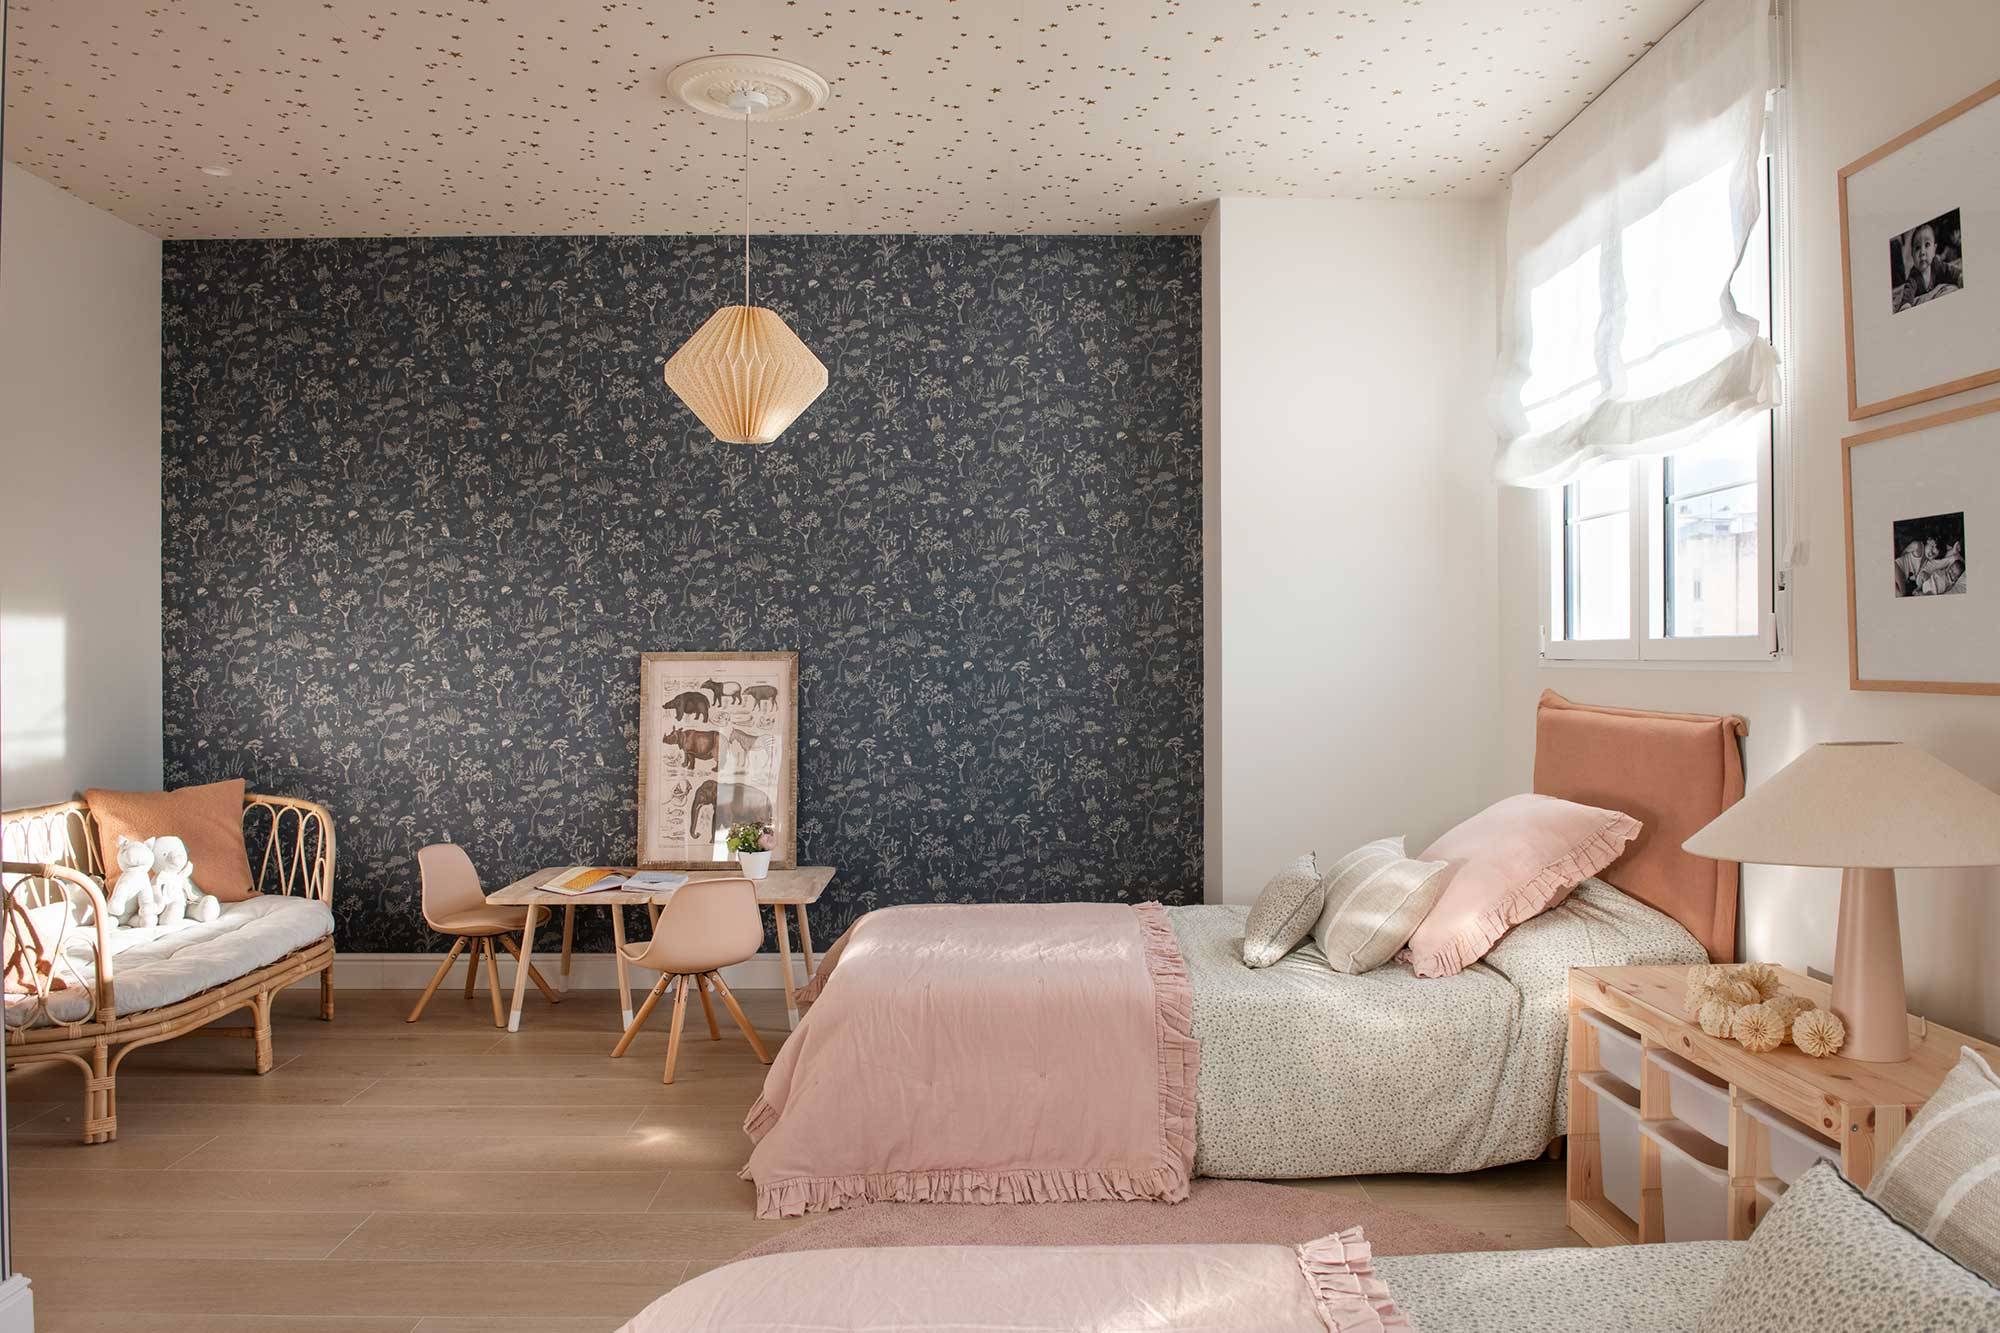 Habitación infantil compartida con papel pintado en paredes y techo. 